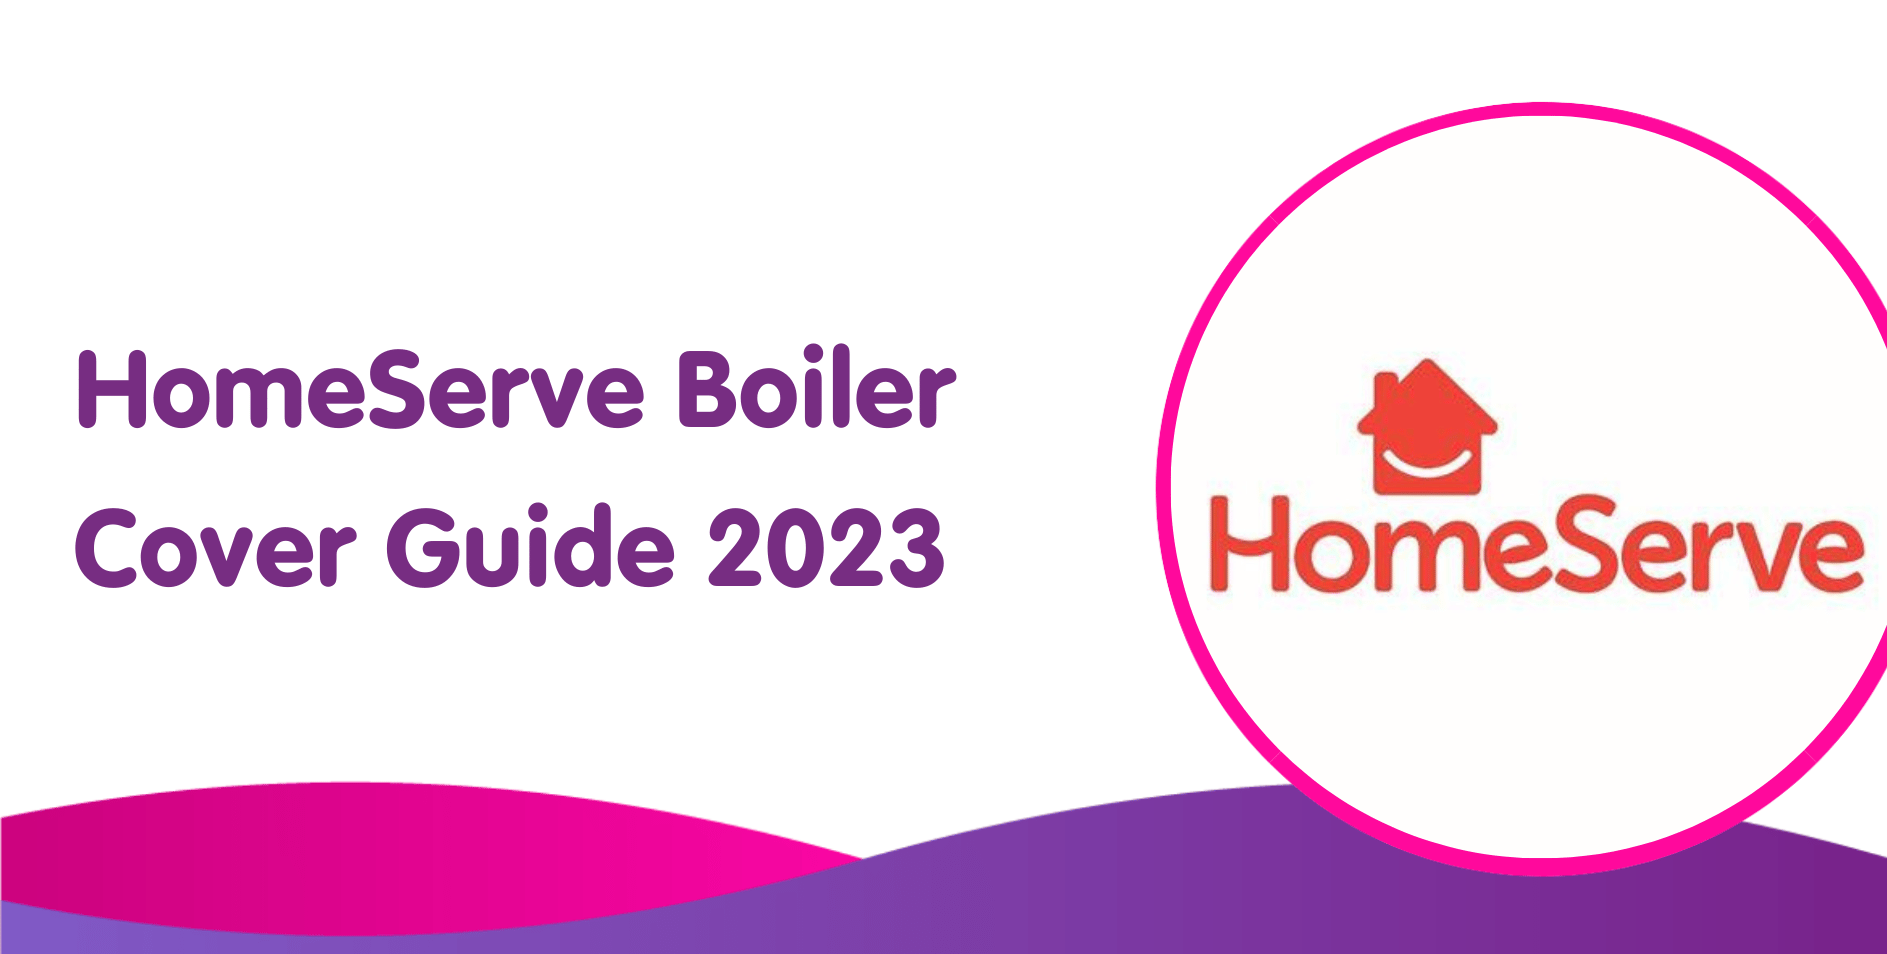 HomeServe Boiler Cover Guide 2023